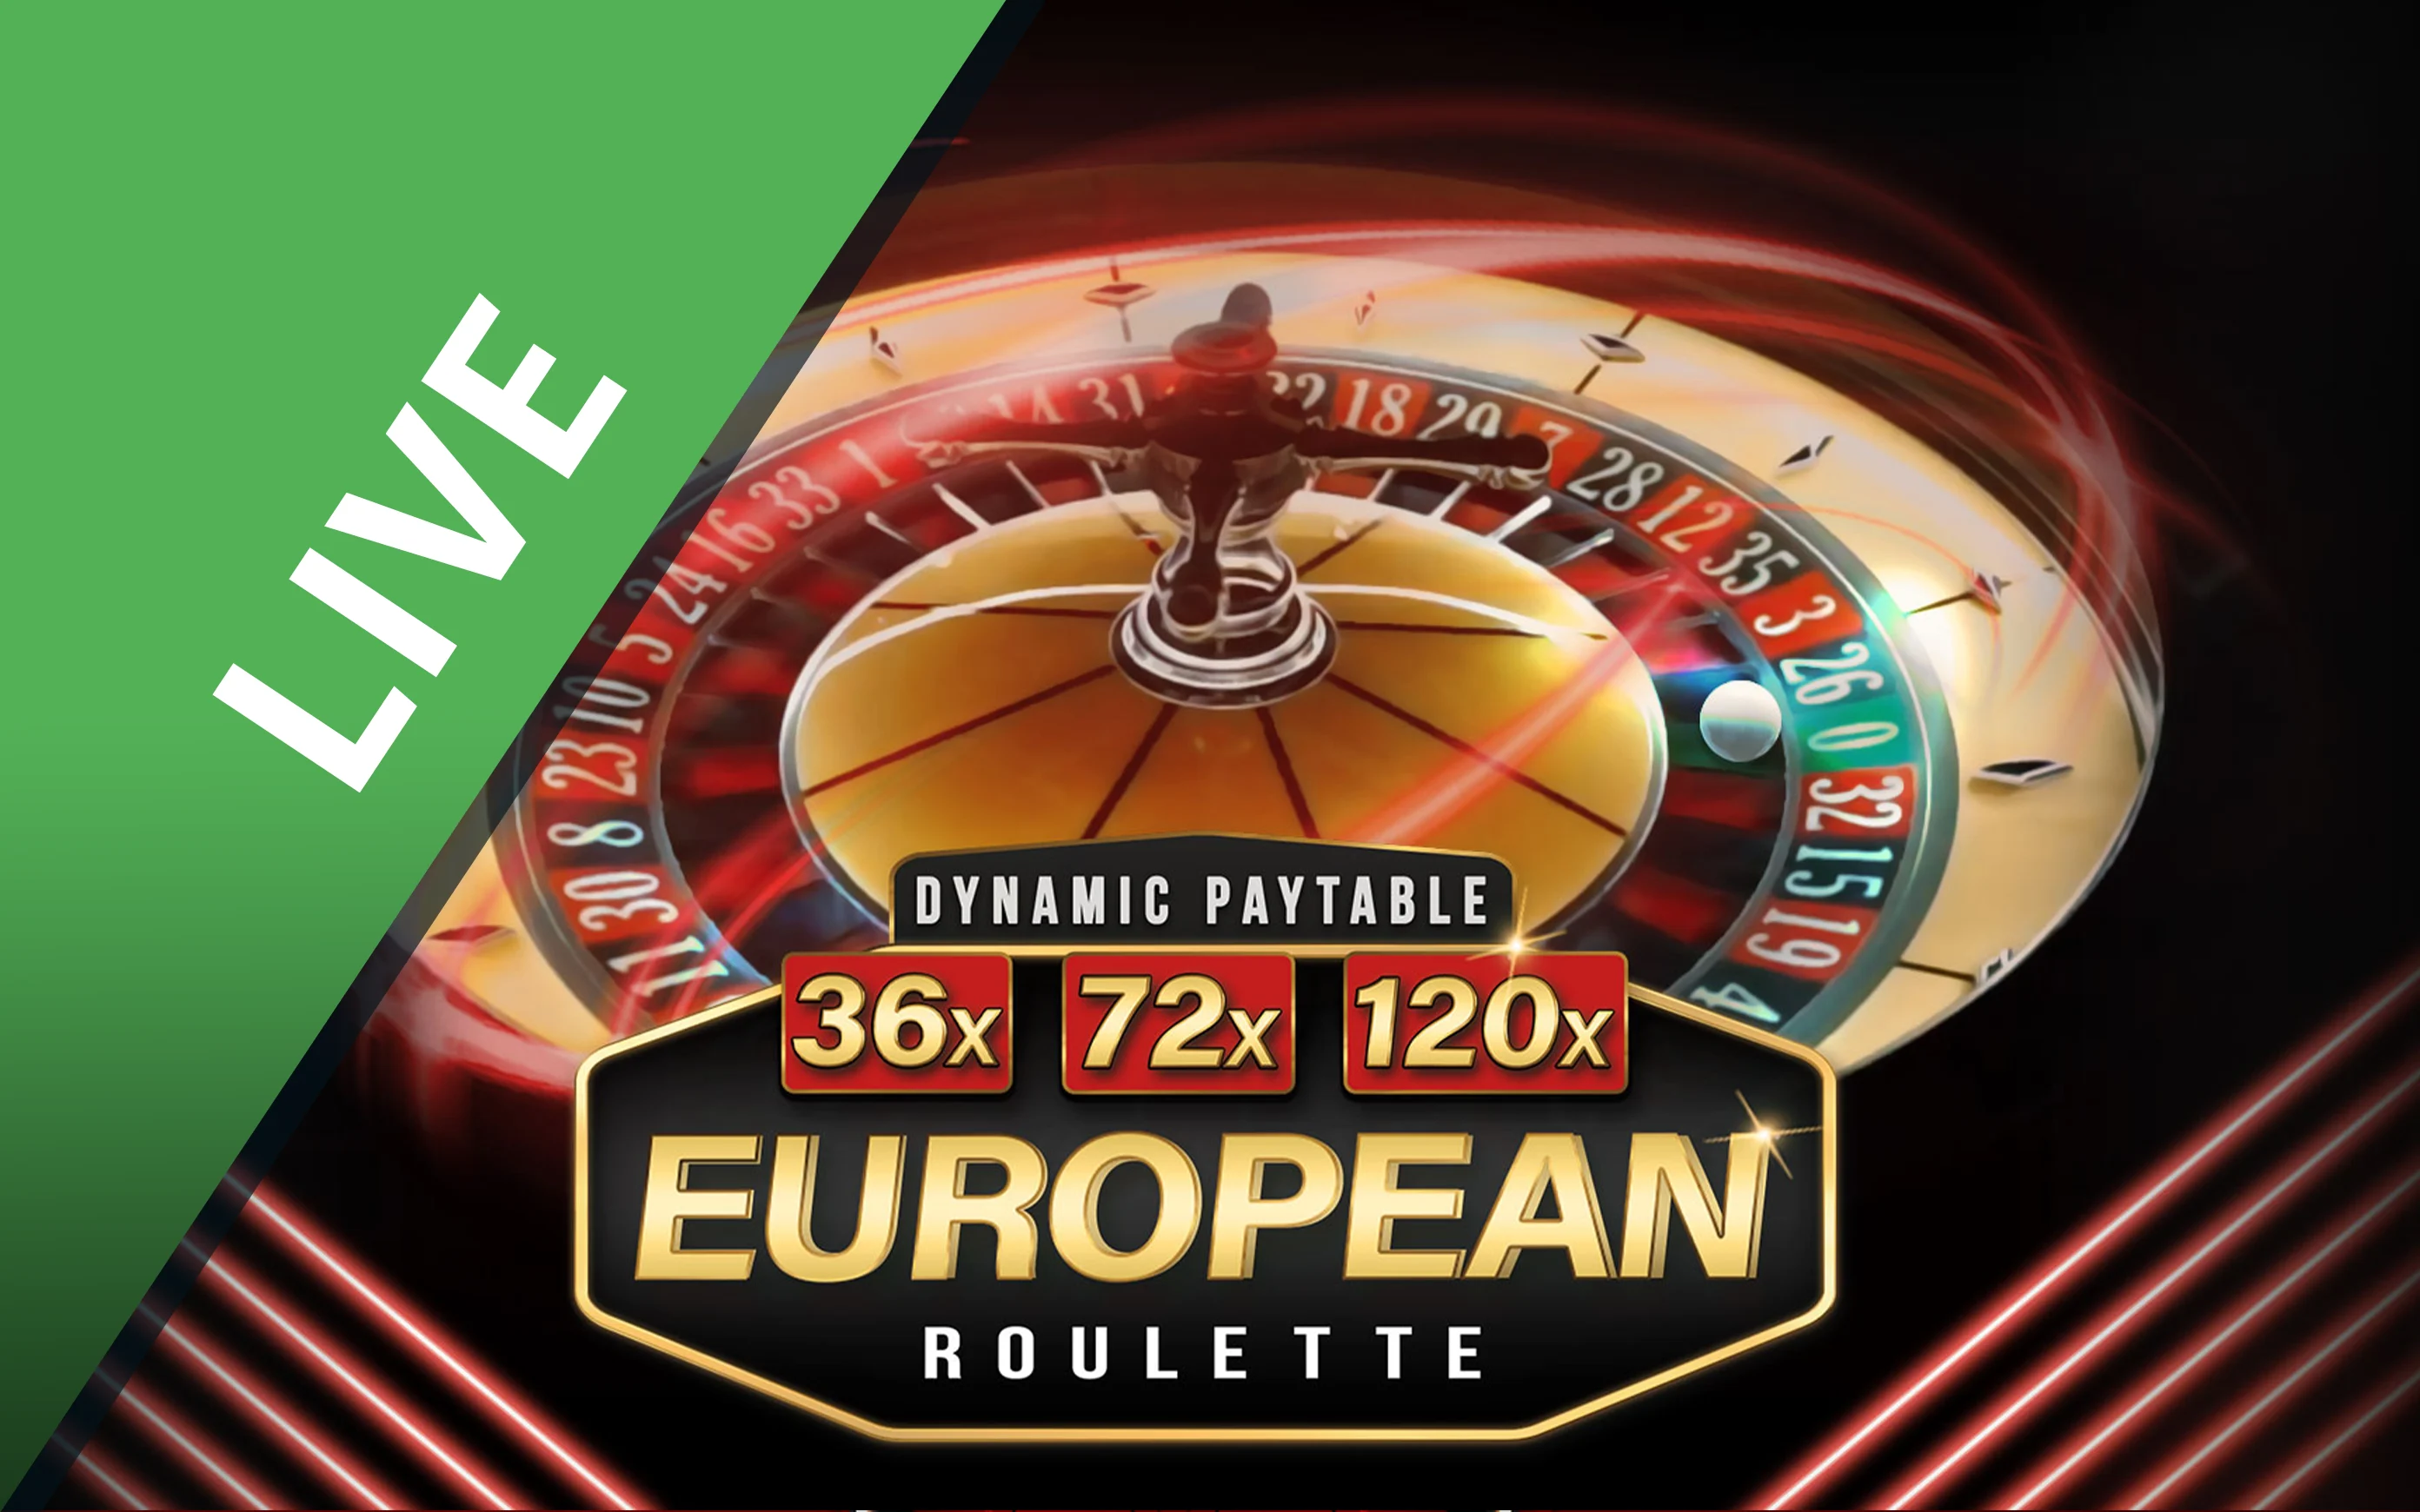 Gioca a Dynamic European Roulette sul casino online Starcasino.be